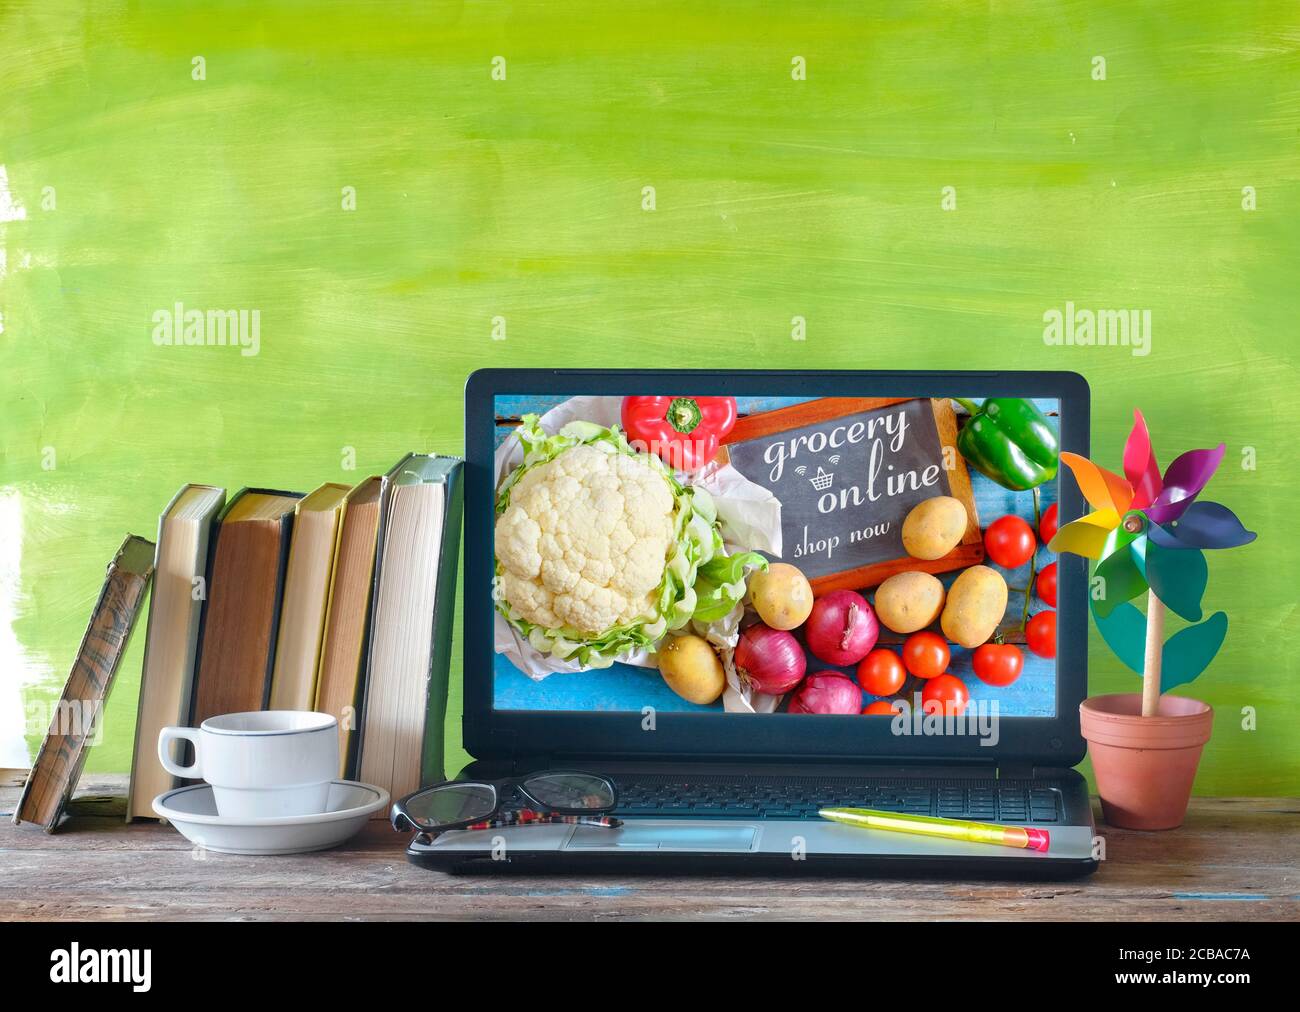 Lebensmittelgeschäft Online-Shop, um Lebensmittel-Lieferung, Lebensmittelgeschäft online, elektronisches Marketing, E-Commerce-Geschäftskonzept zu bestellen Stockfoto